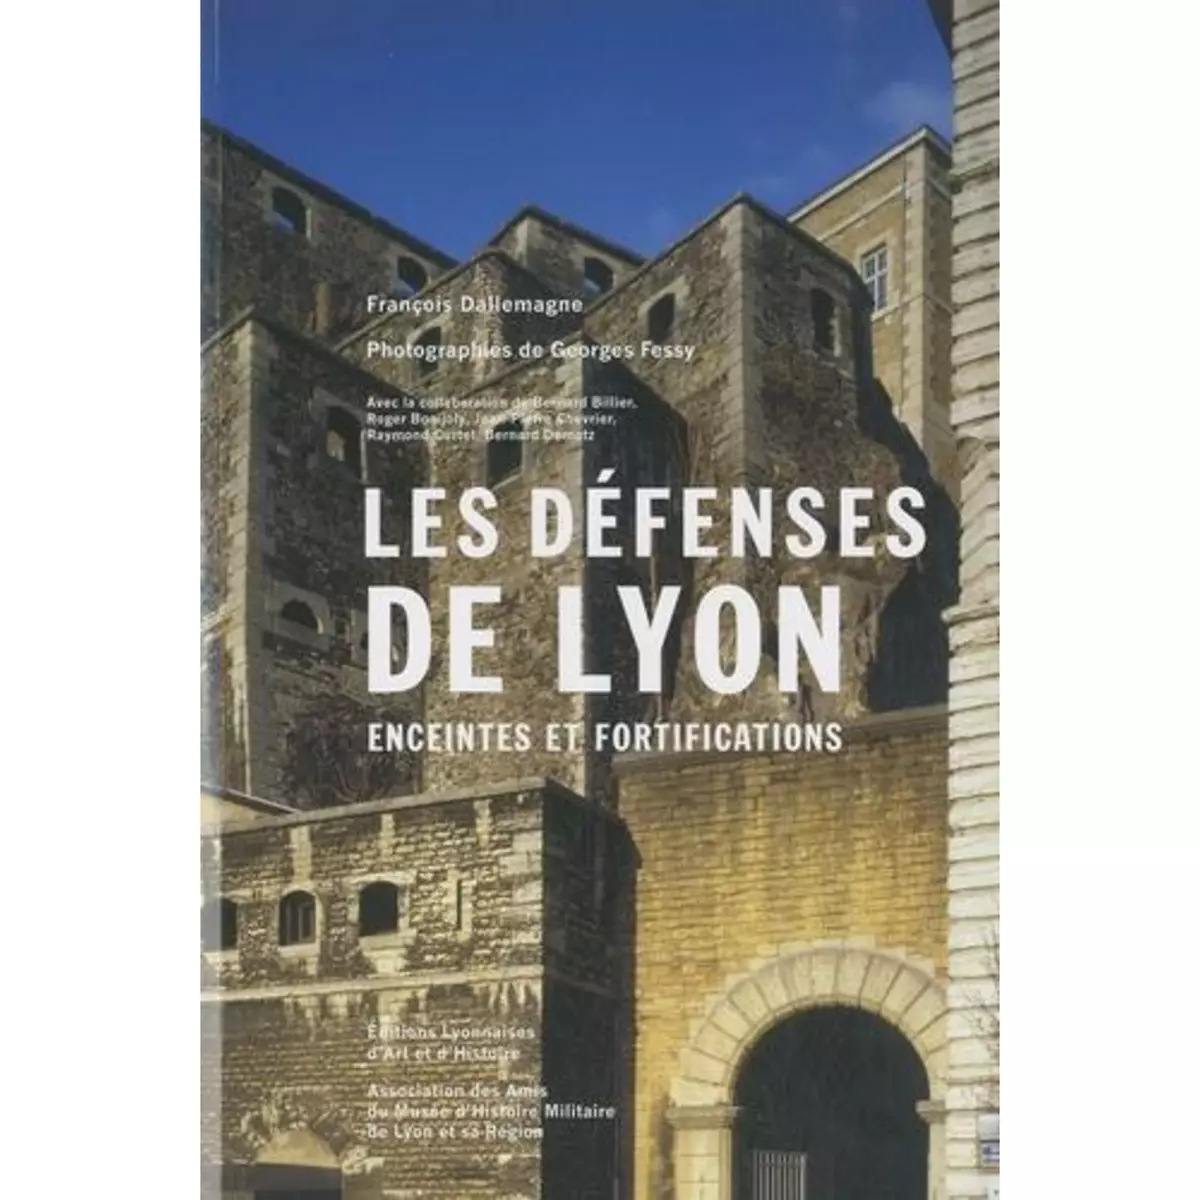  LES DEFENSES DE LYON. ENCEINTES ET FORTIFICATIONS, 2E EDITION, Dallemagne François